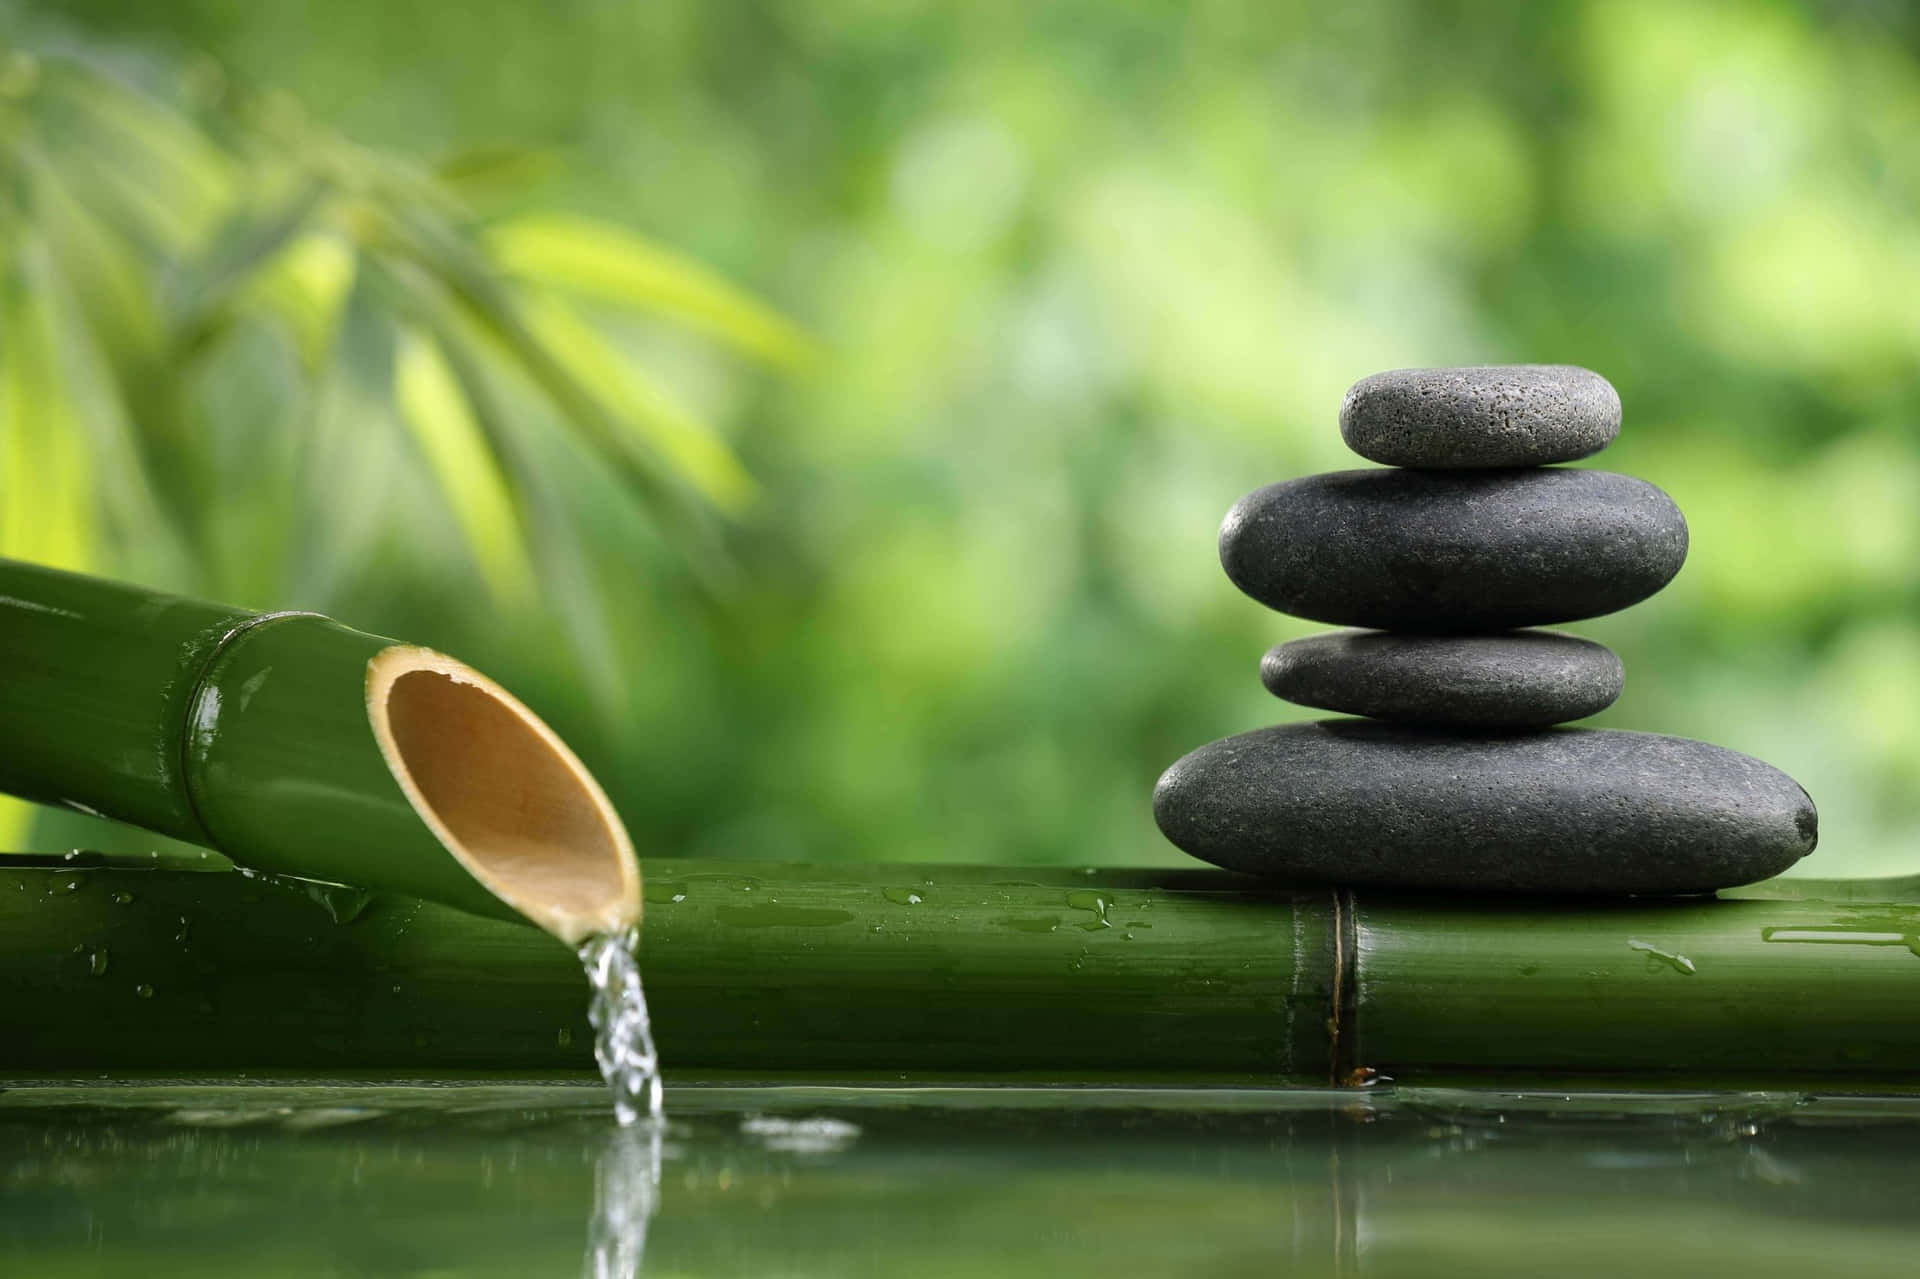 Abrase À Tranquilidade E Deixe A Paz Do Zen Te Envolver.